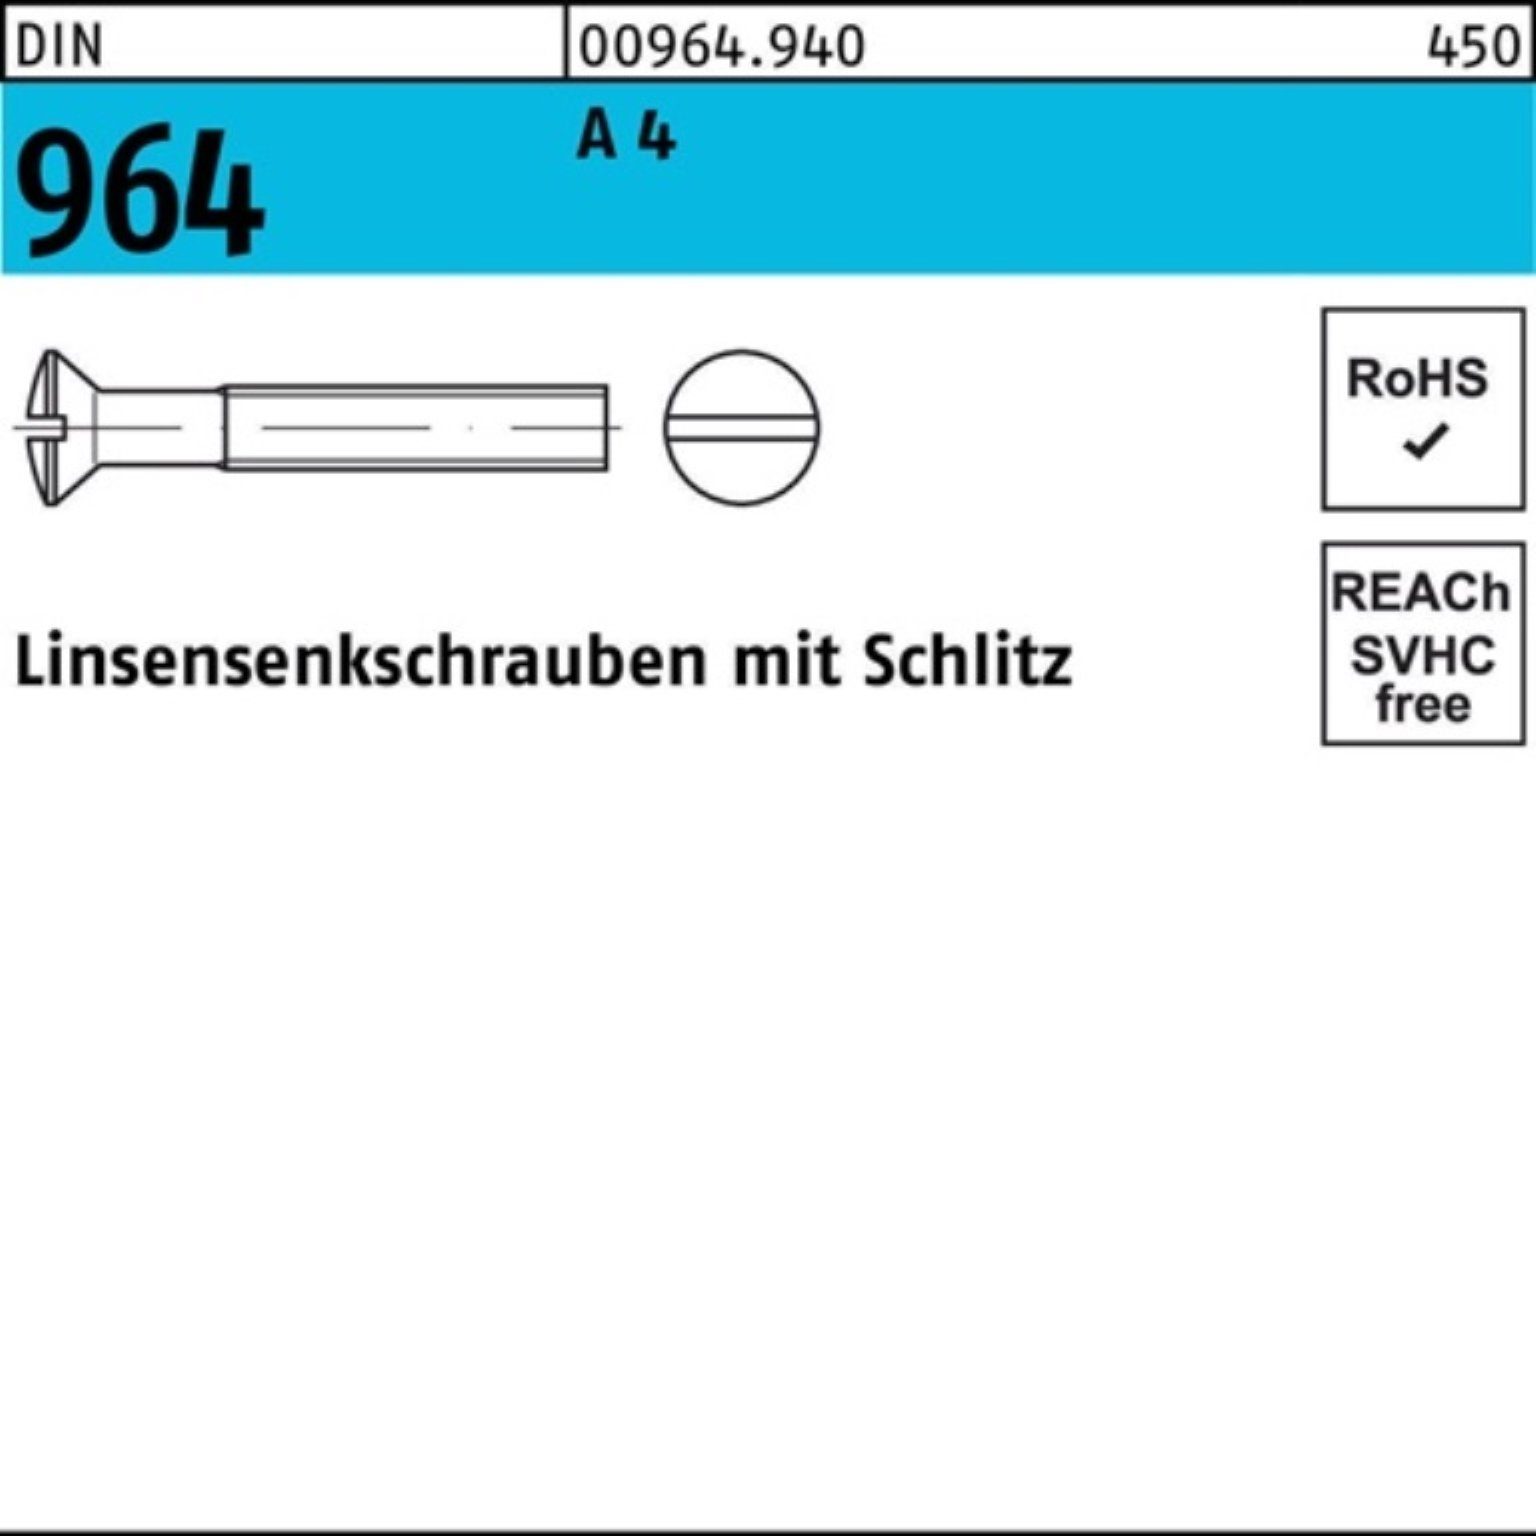 A Reyher DI Stück 200er Linsenschraube Schlitz Pack M3x 12 DIN 4 964 Linsensenkschraube 200